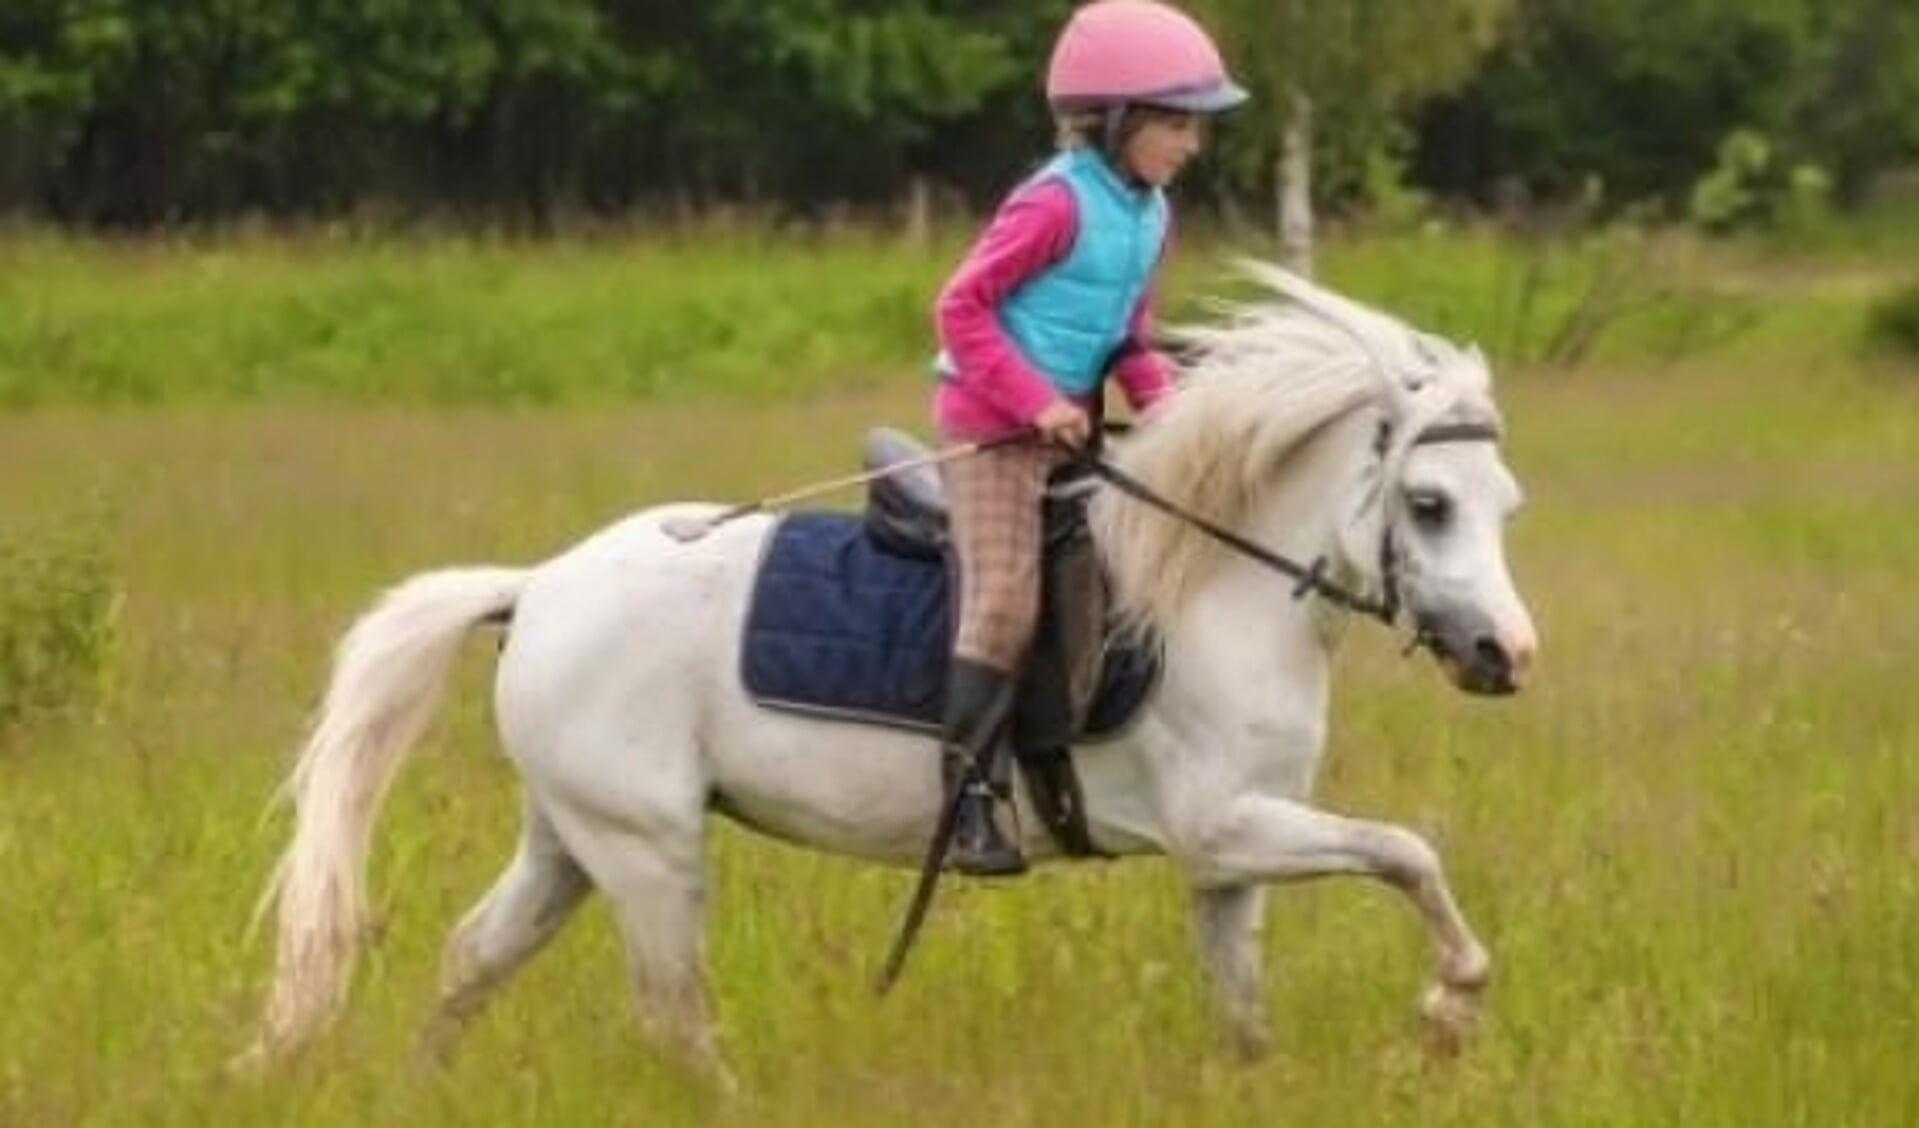 Elementair moeder Expertise Paardrijden goed voor kinderen? Jazeker! | Het onafhankelijke  paarden(sport)medium